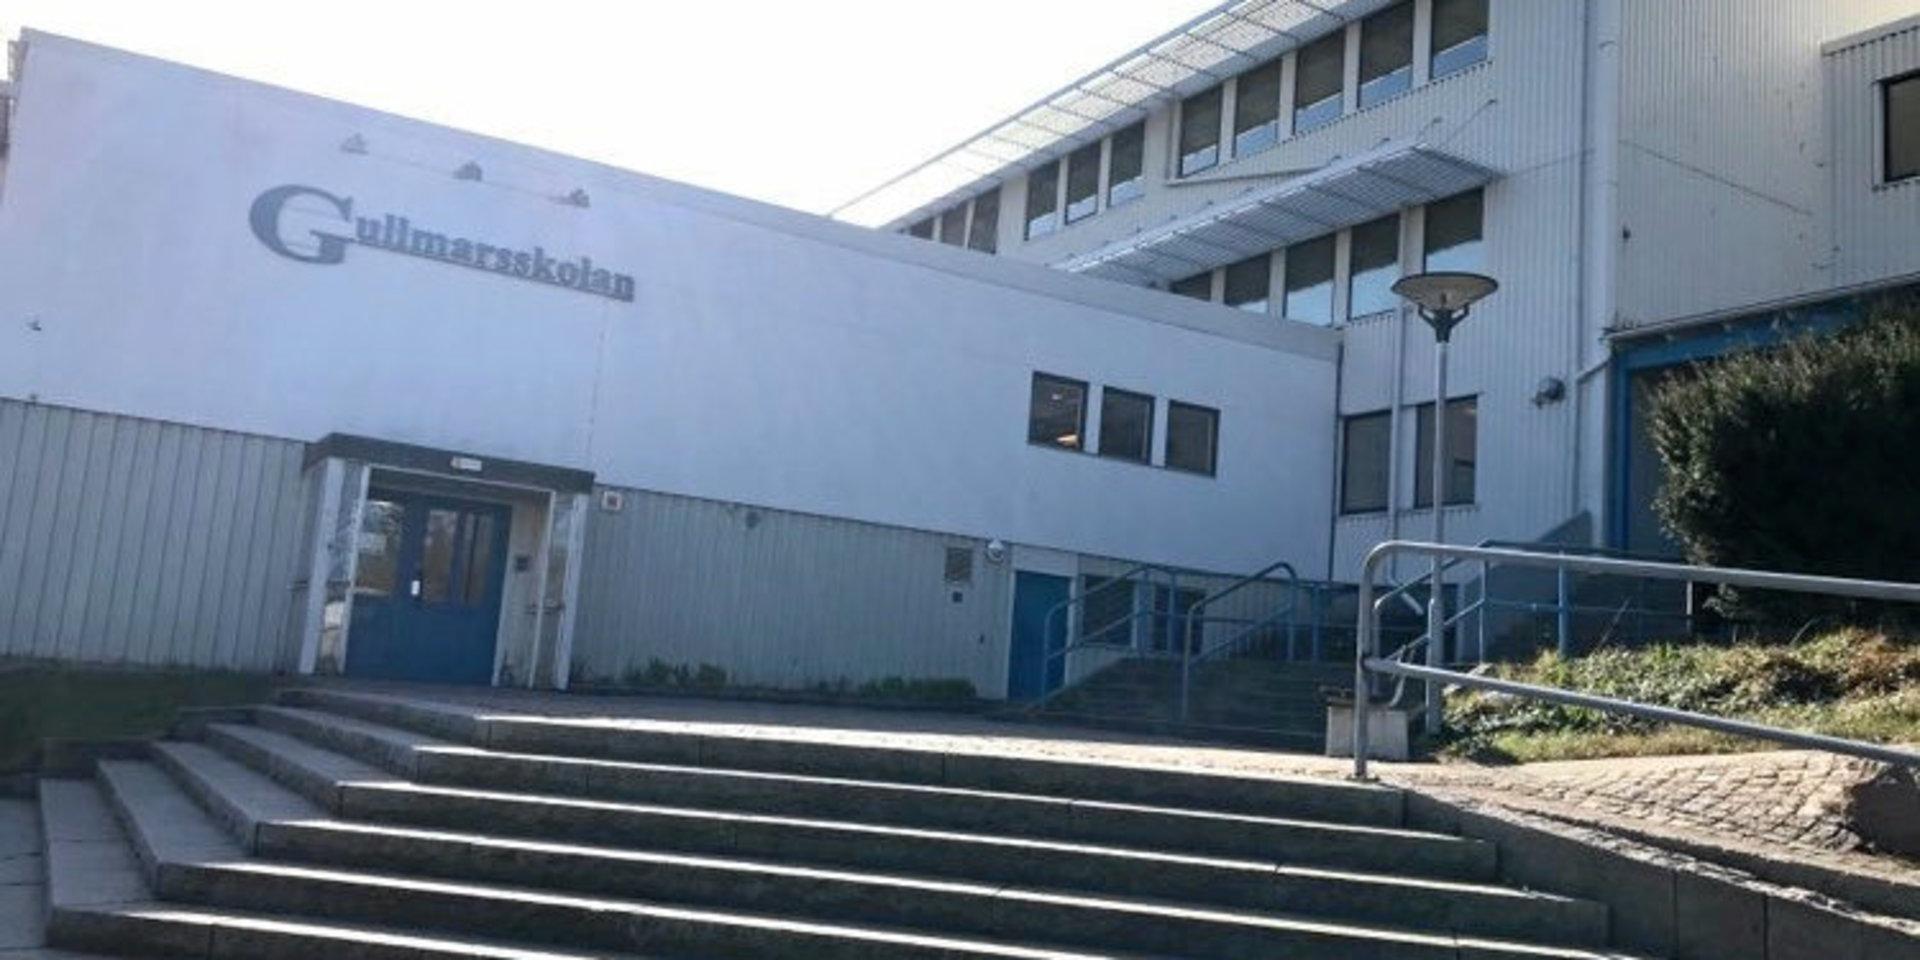 Gullmarsskolan i Lysekil fick utrymmas efter att en fyrverkeripjäs avfyrats inne i lokalen.